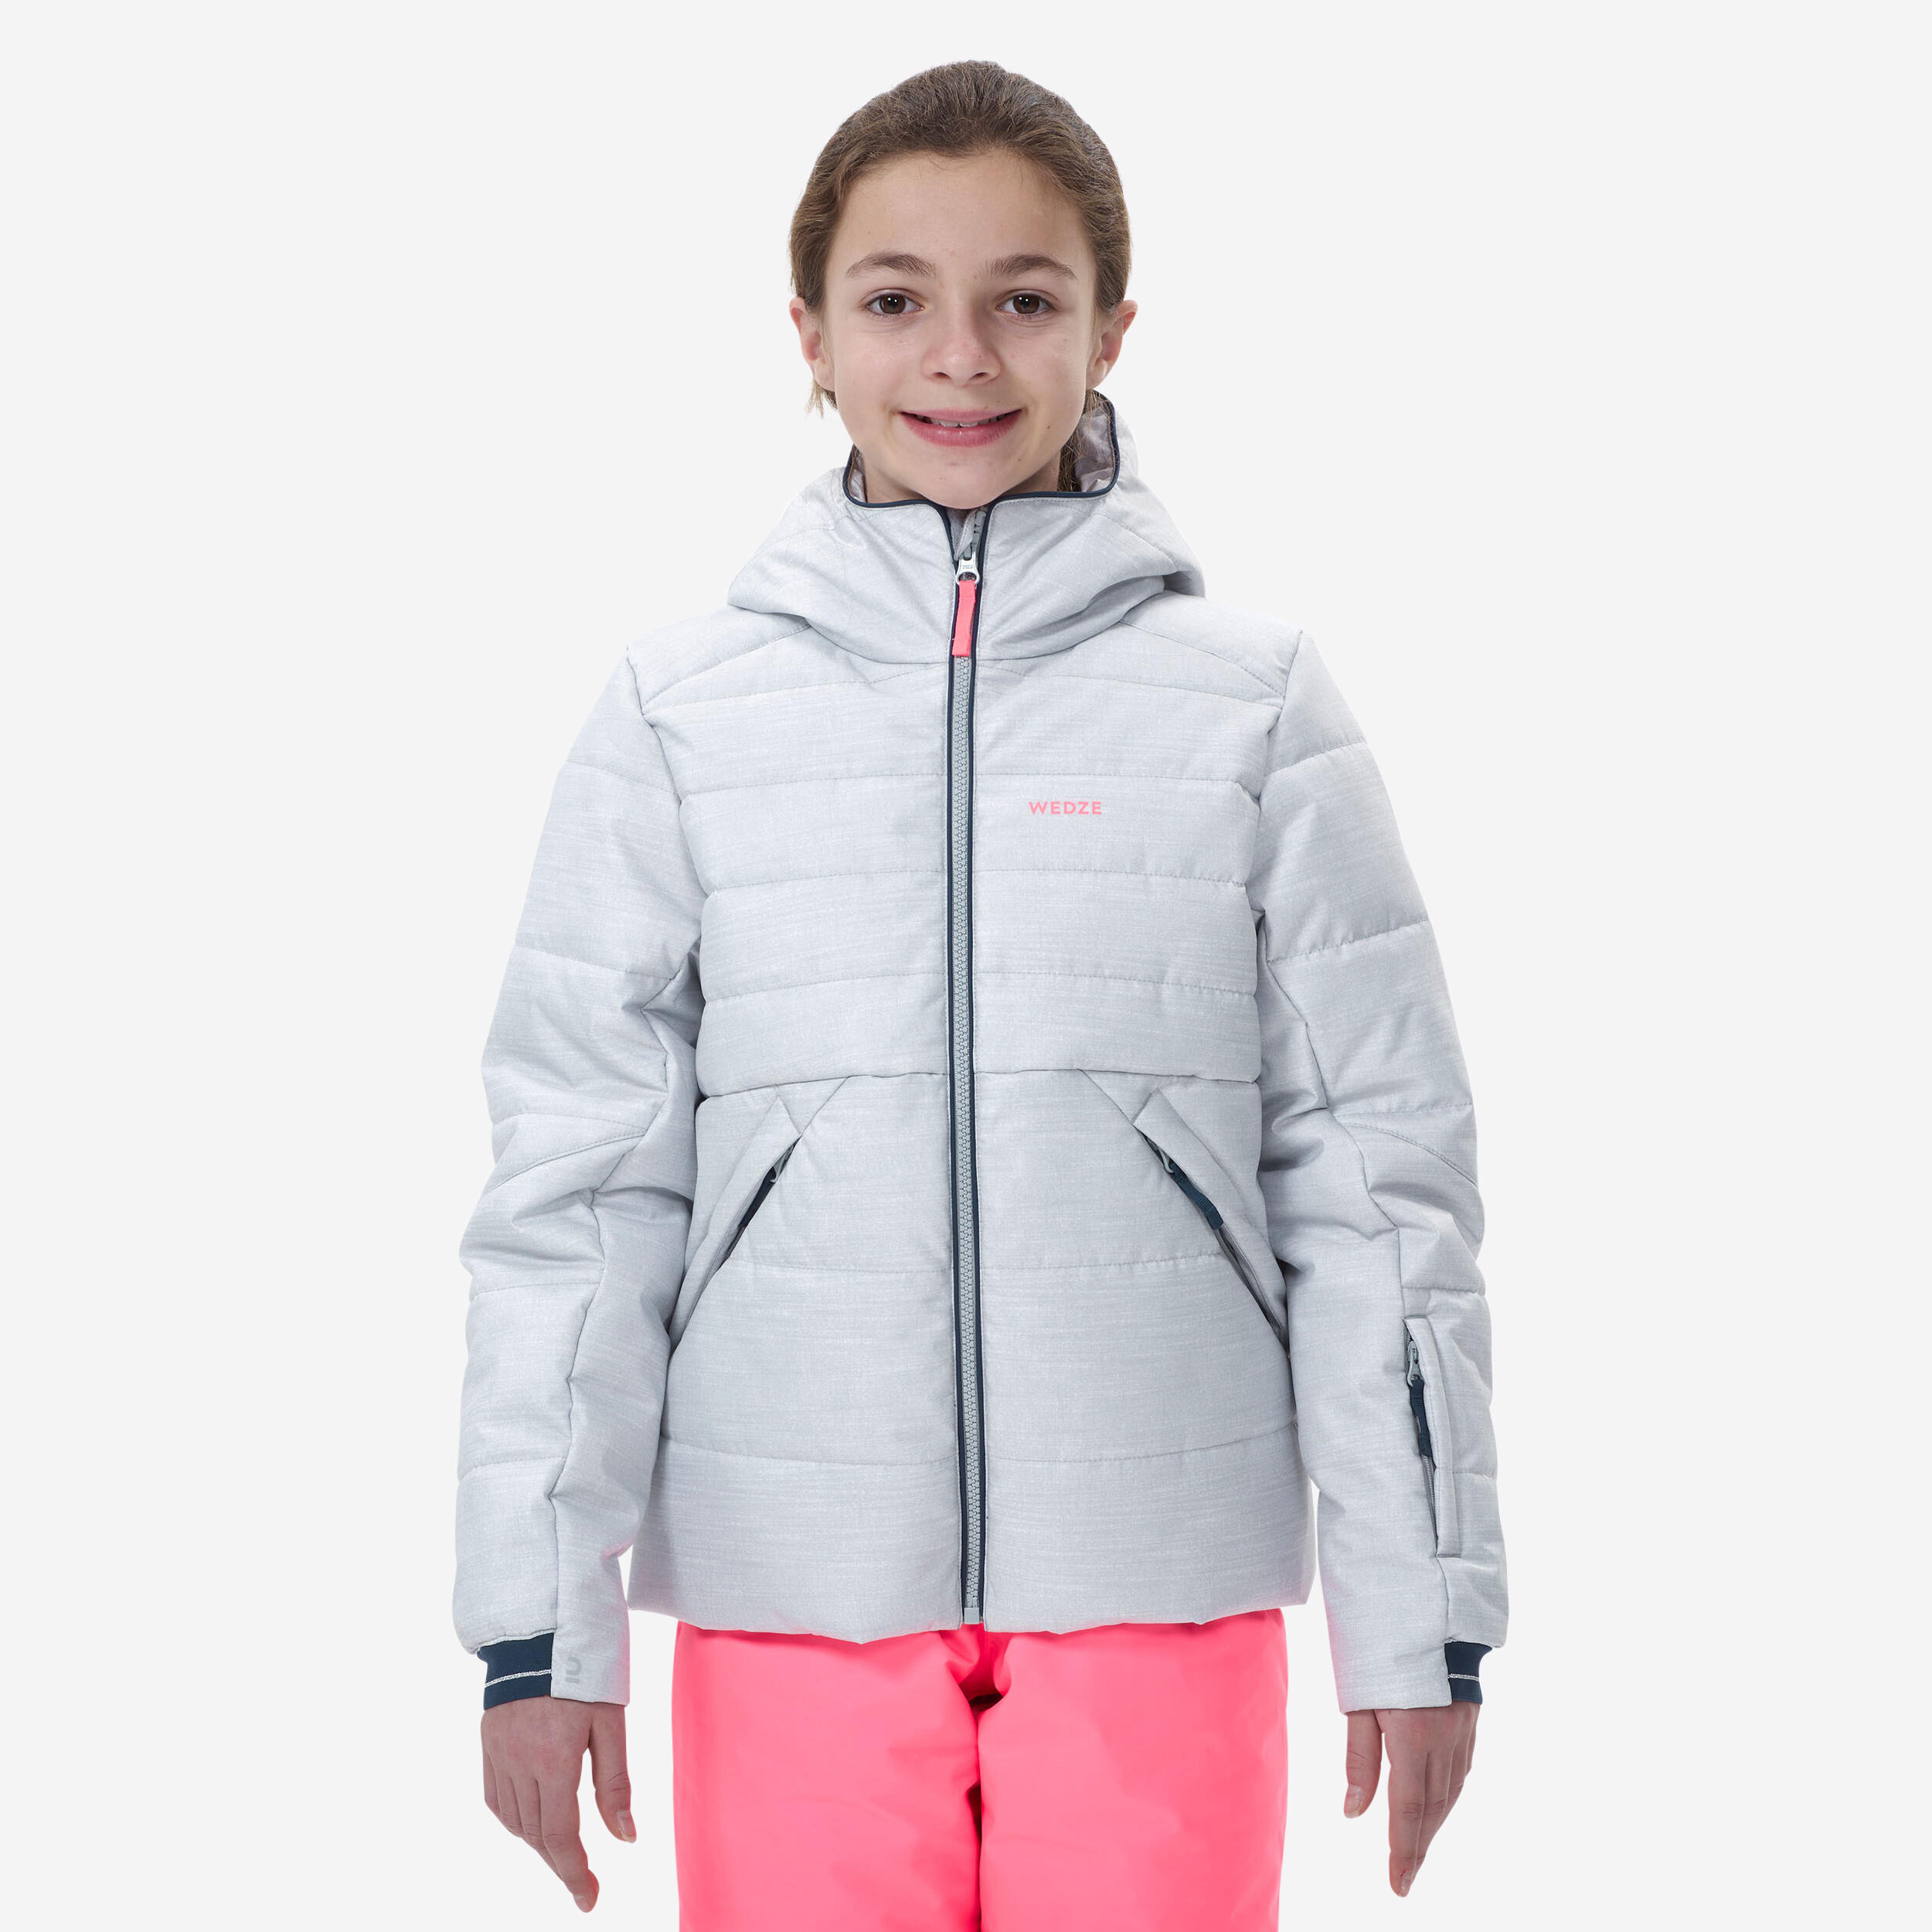 doudoune de ski enfant chaude et imperméable - 100 warm grise - wedze